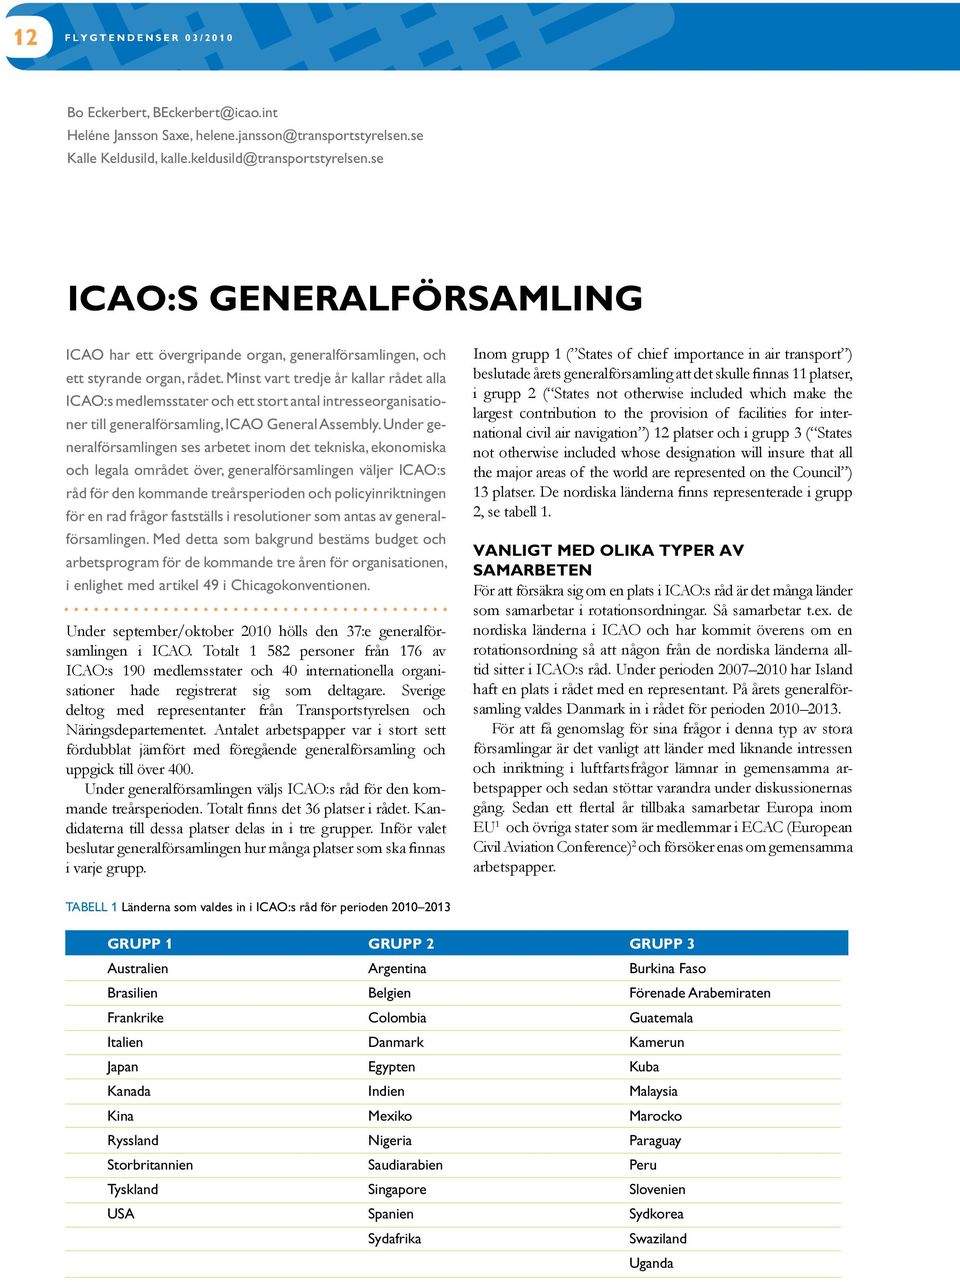 Minst vart tredje år kallar rådet alla ICAO:s medlemsstater och ett stort antal intresseorganisationer till generalförsamling, ICAO General Assembly.